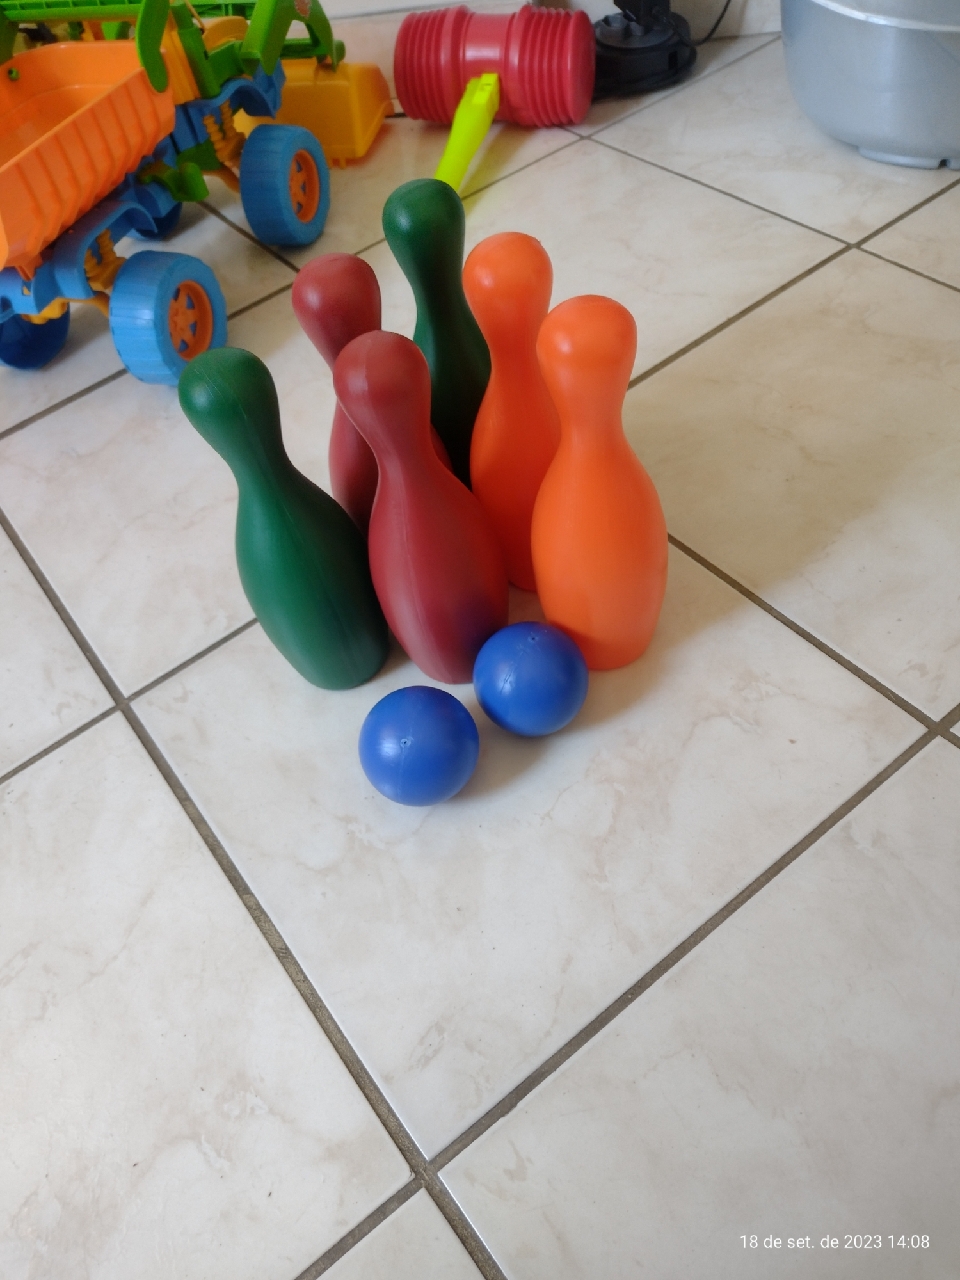 Jogo Mini Boliche com 6 pinos de 19 cm e 2 bolas de plástico